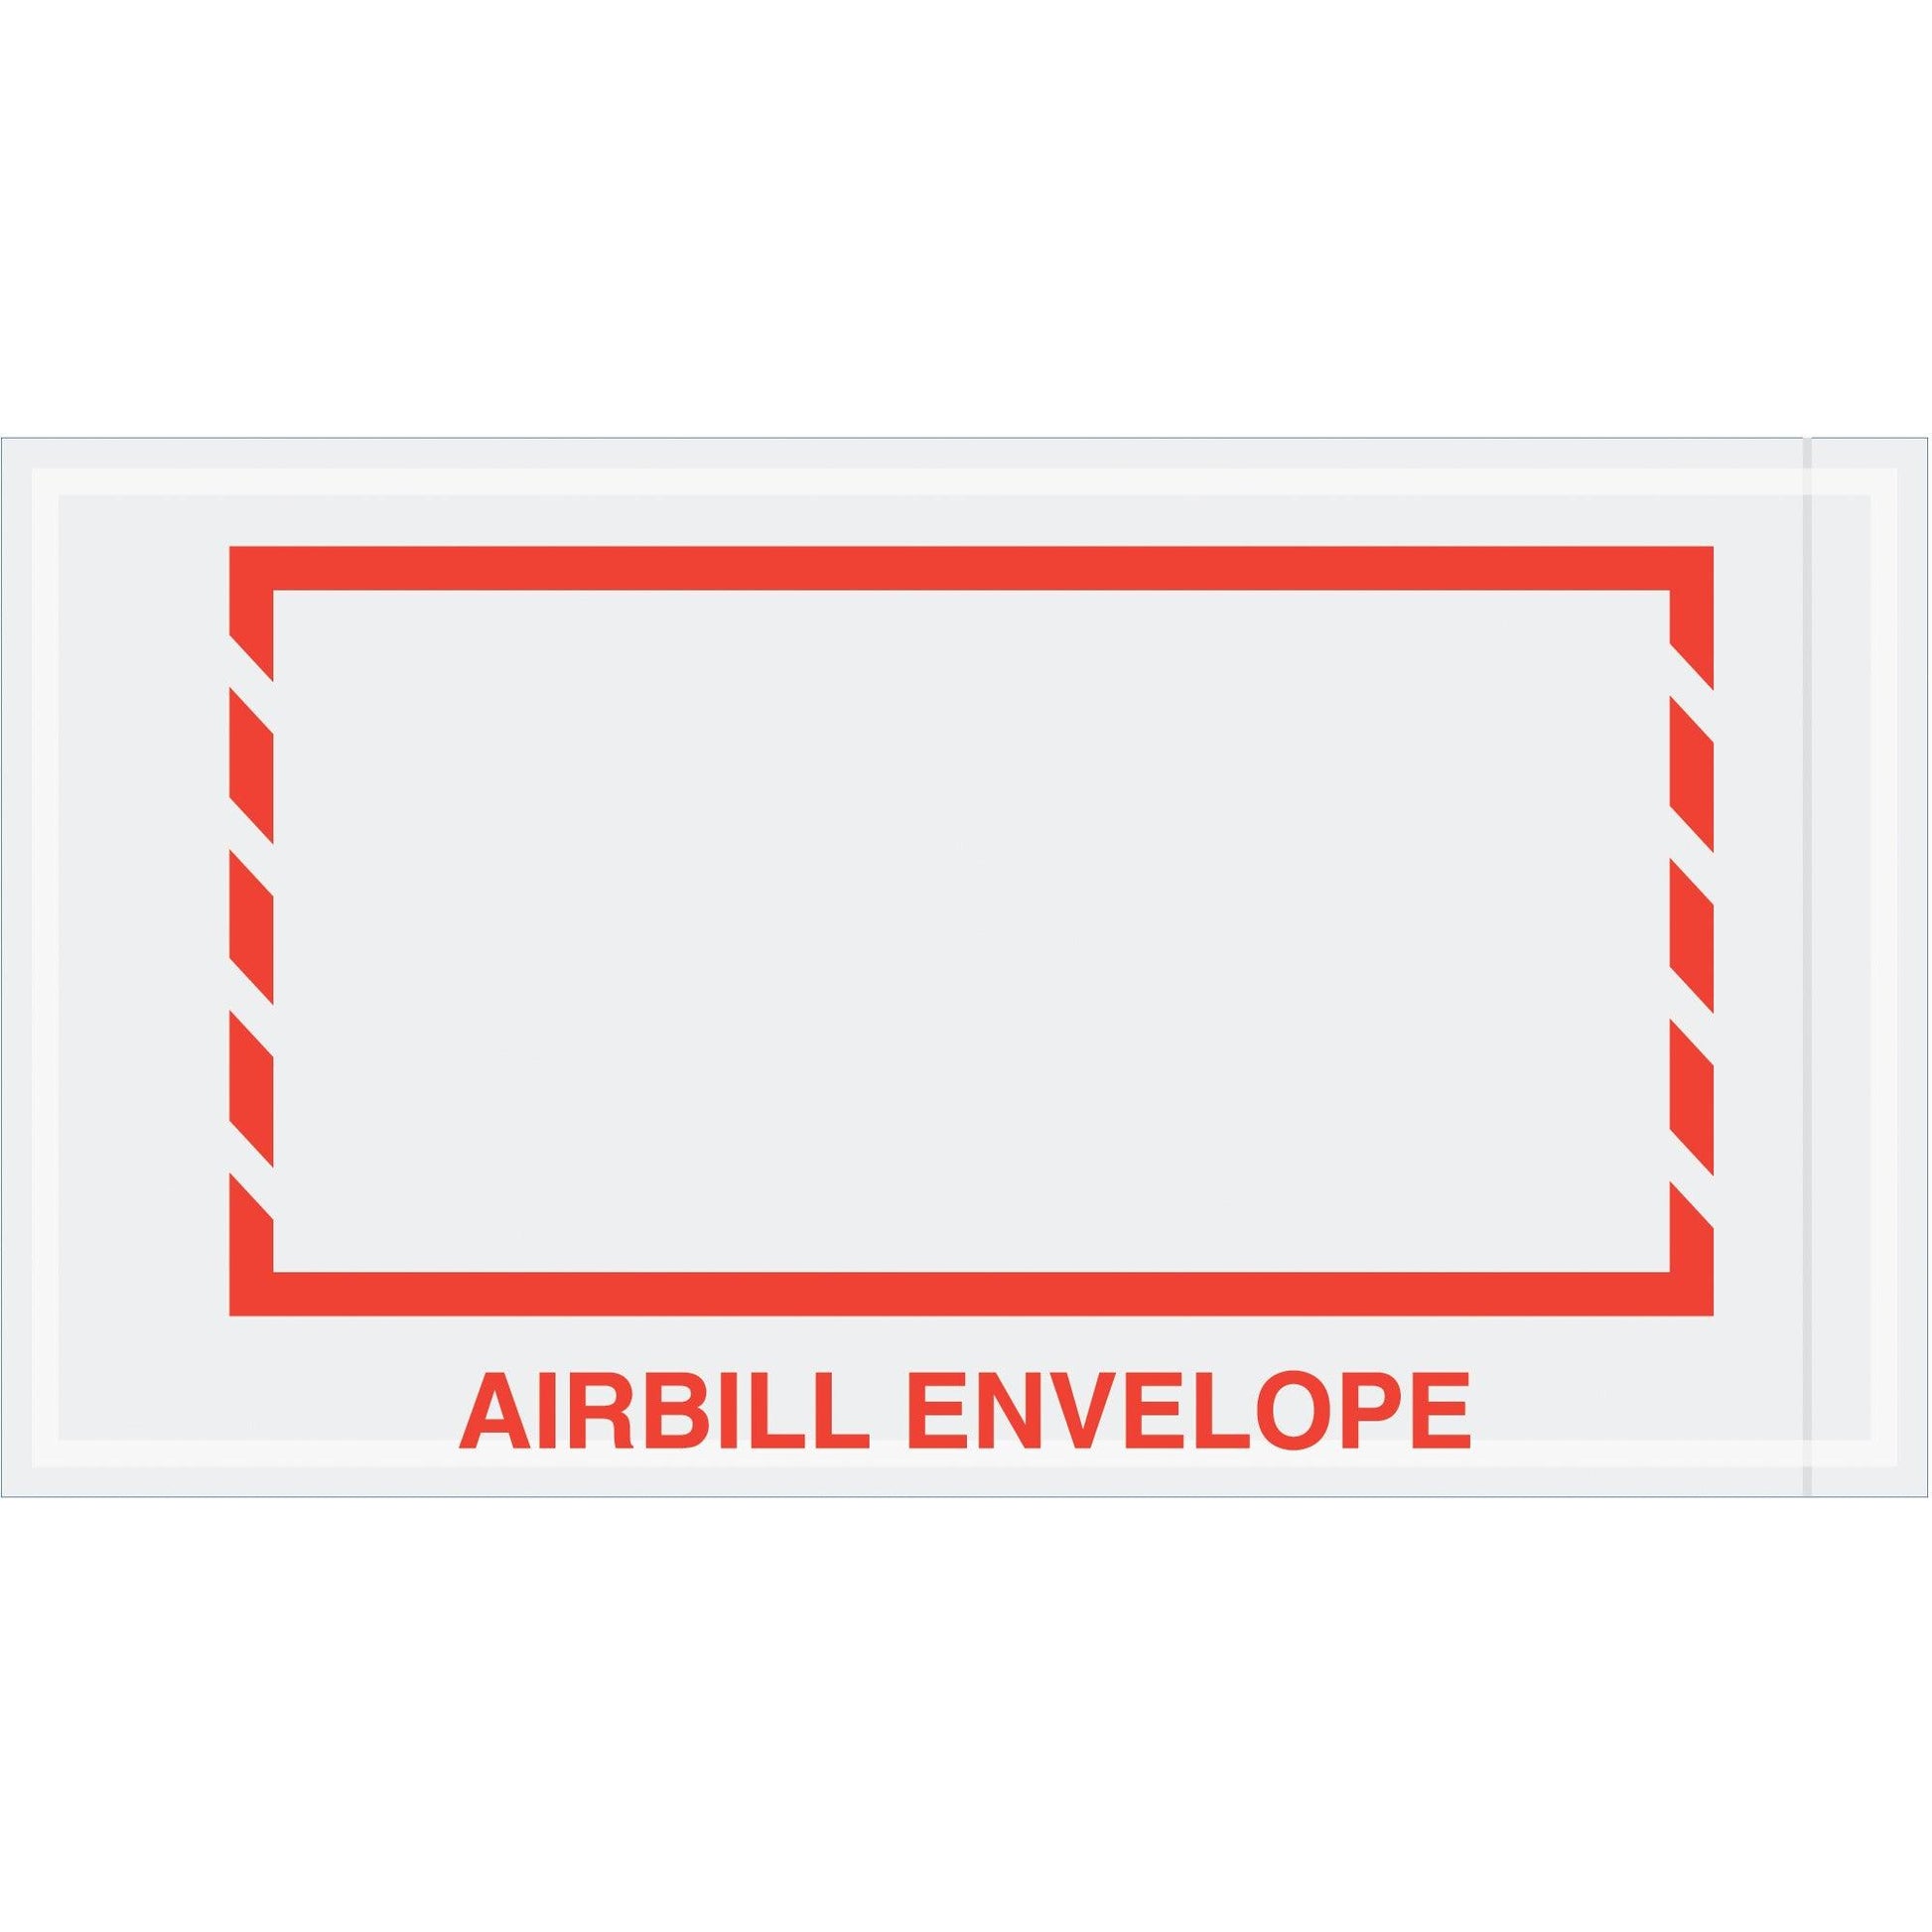 5 1/2 x 10" Red Border "Airbill Envelope" Document Envelopes - PL484